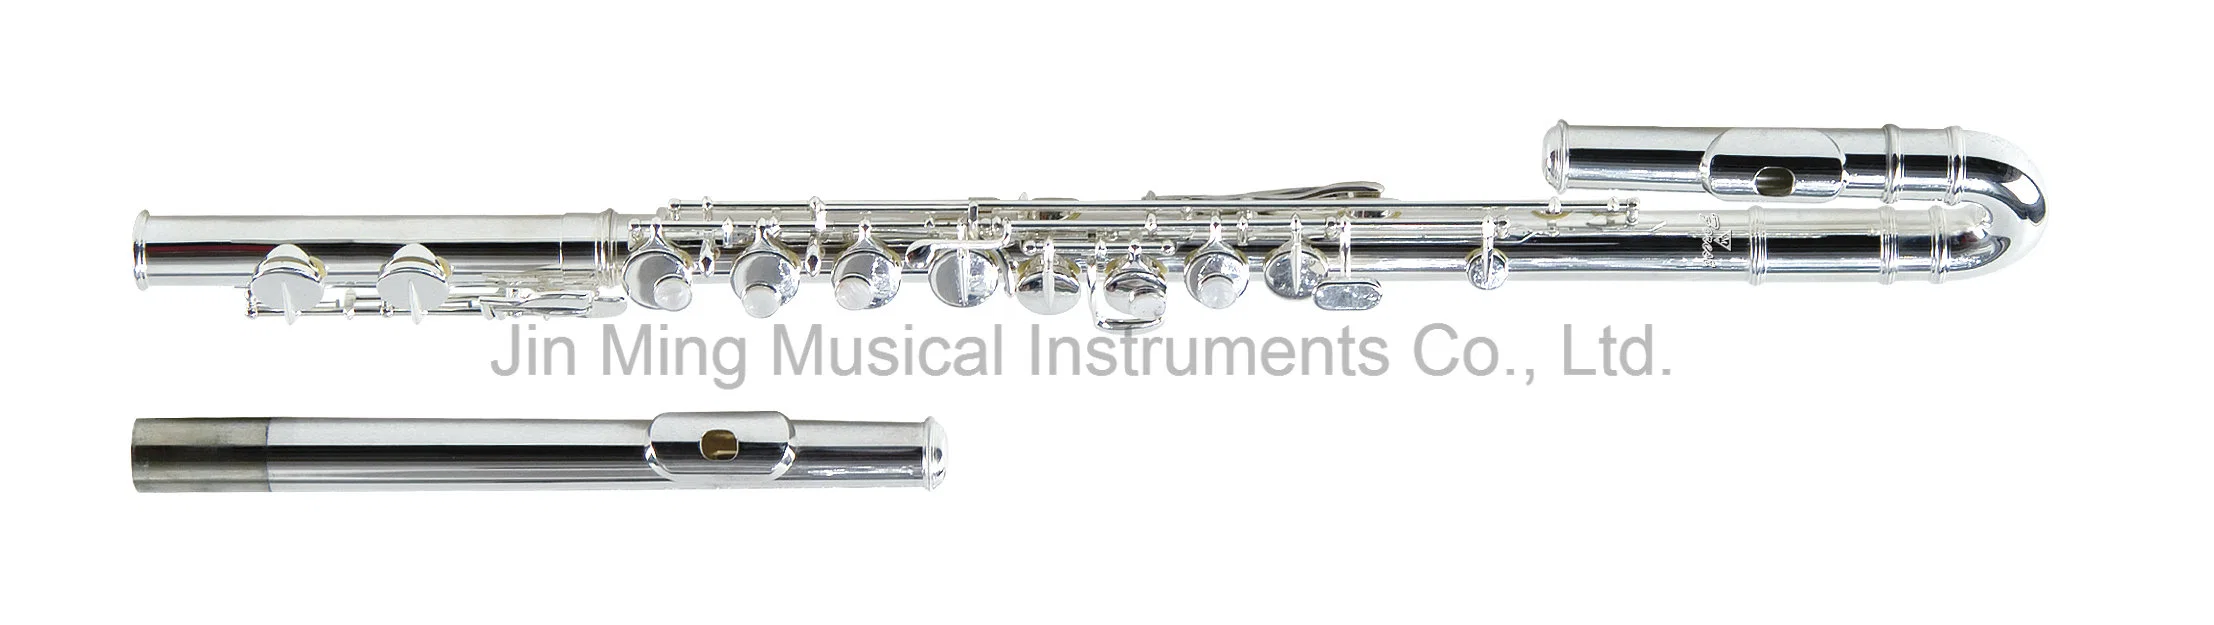 الجودة الجيدة Alto Flute صنع في الصين سعر رخيصة الشركة المصنعة